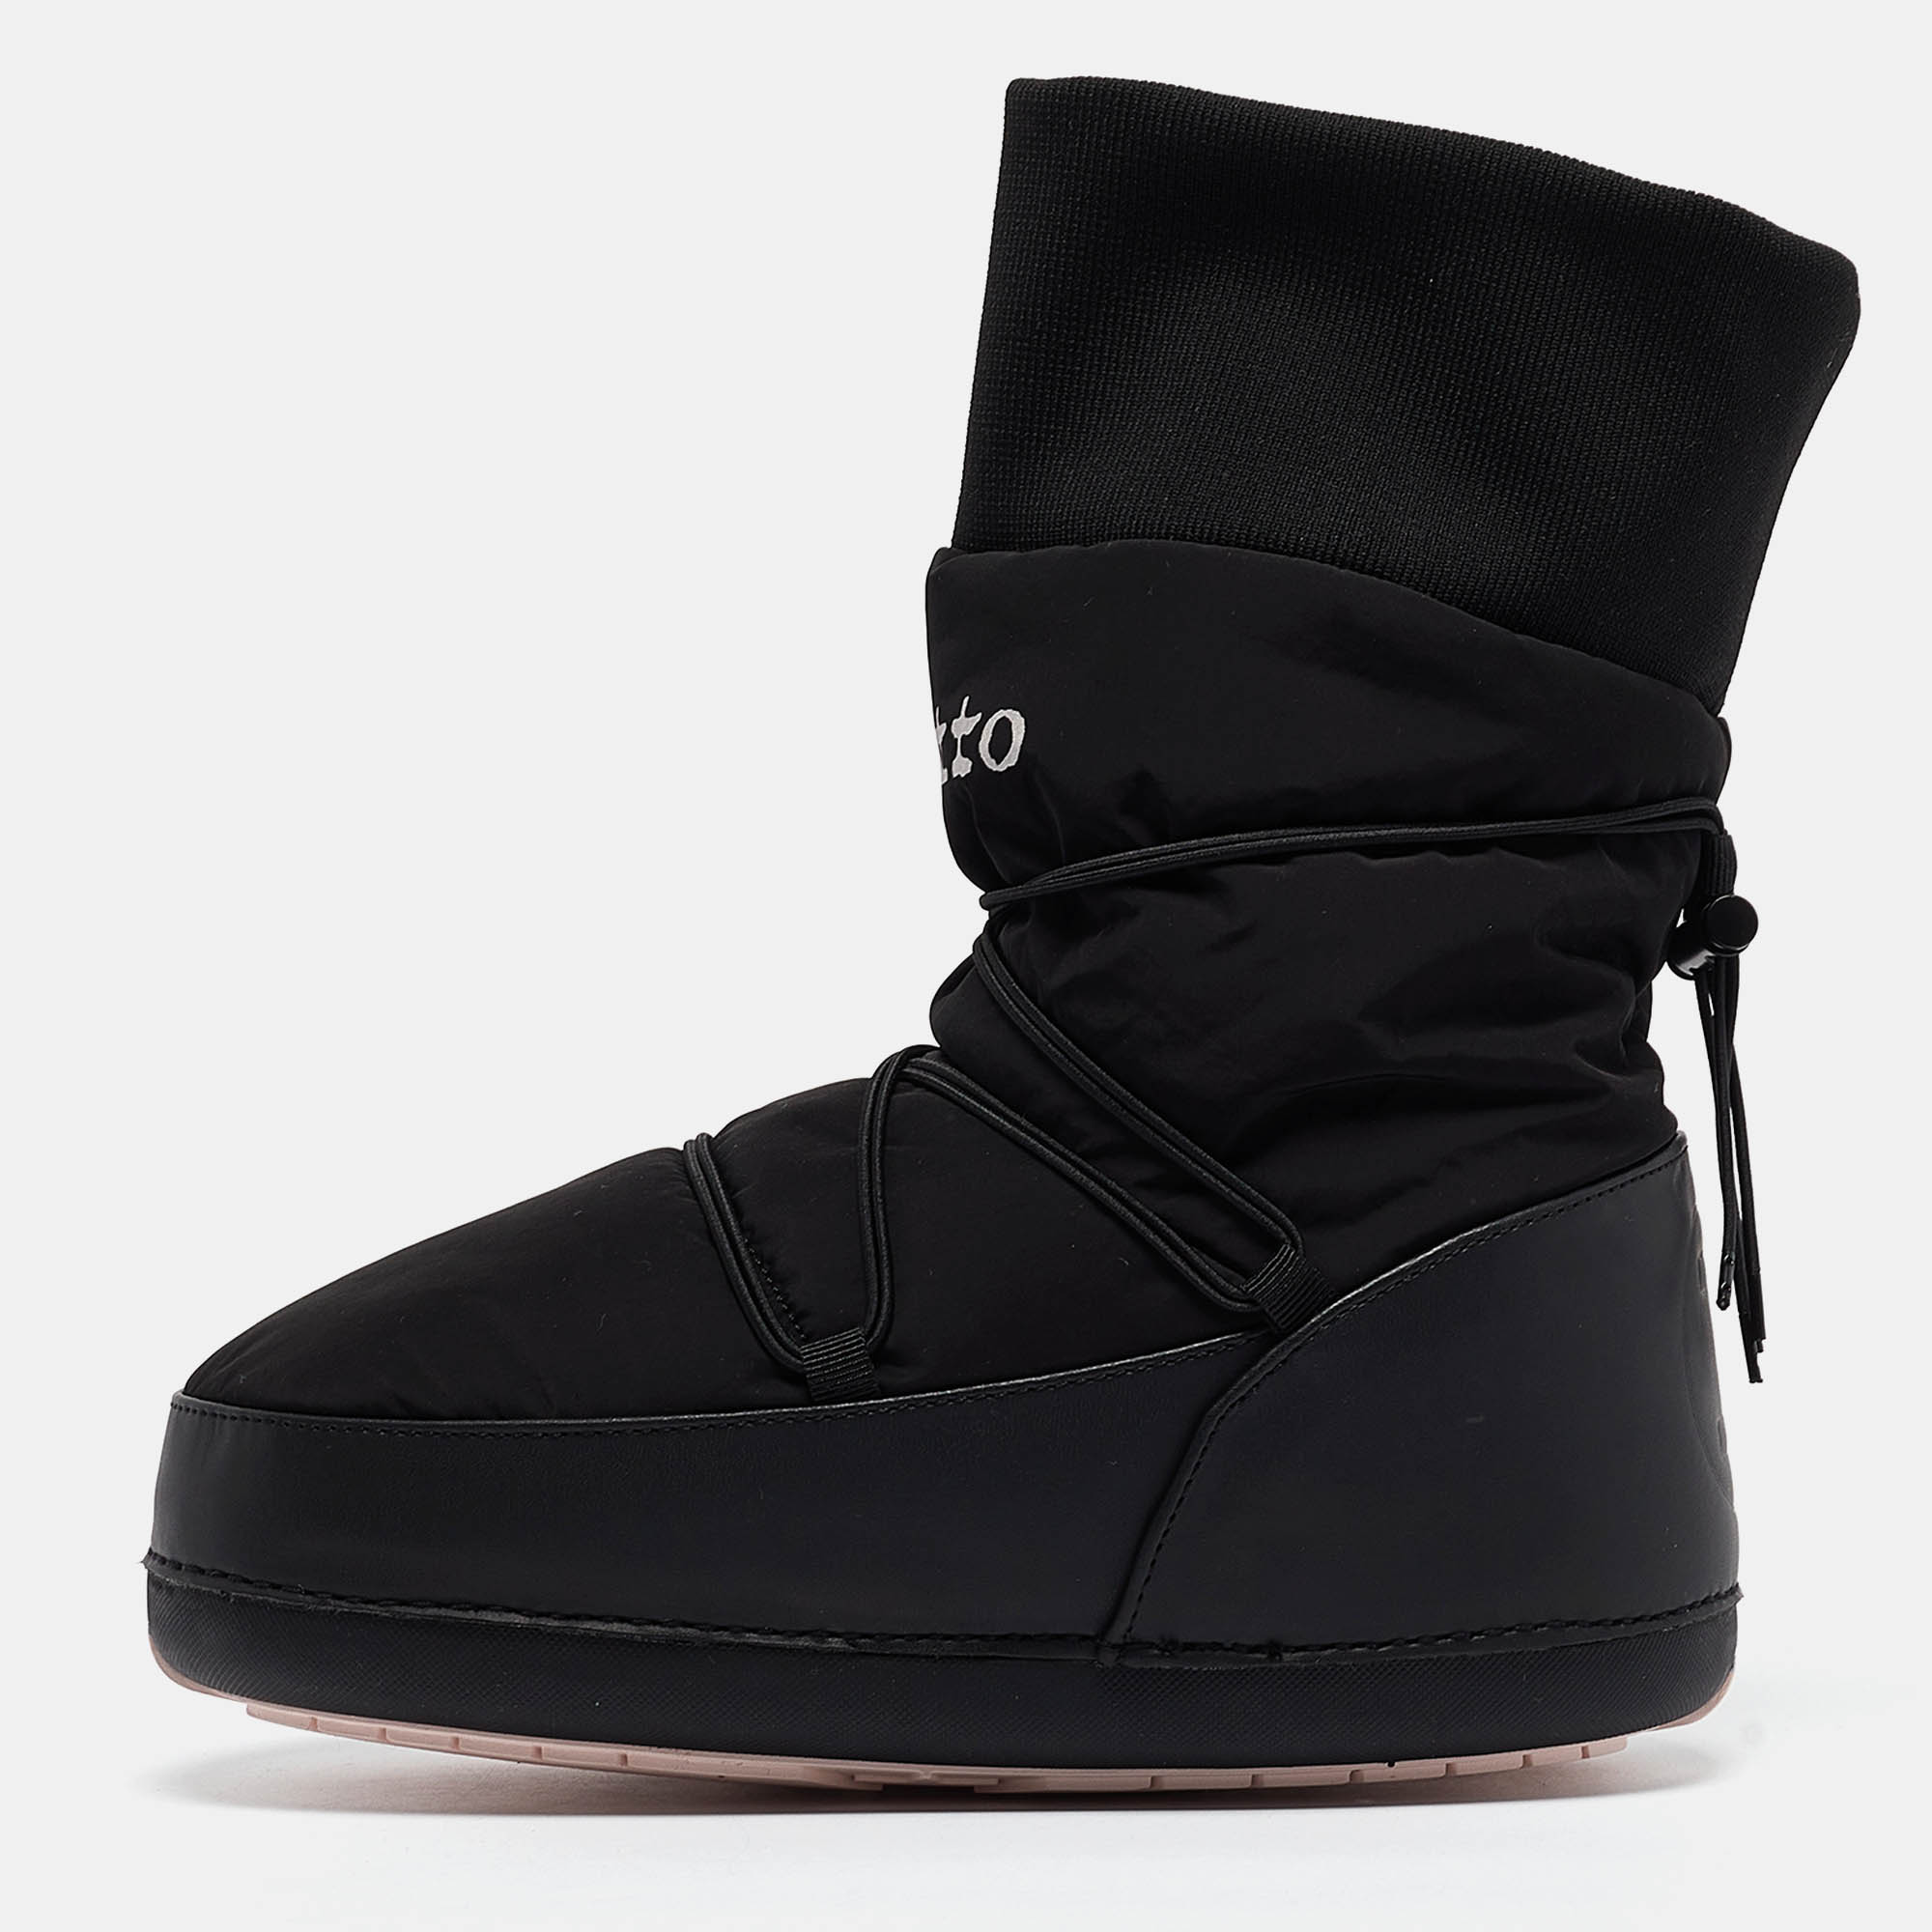 Repetto black nylon getianne boots size 36/37